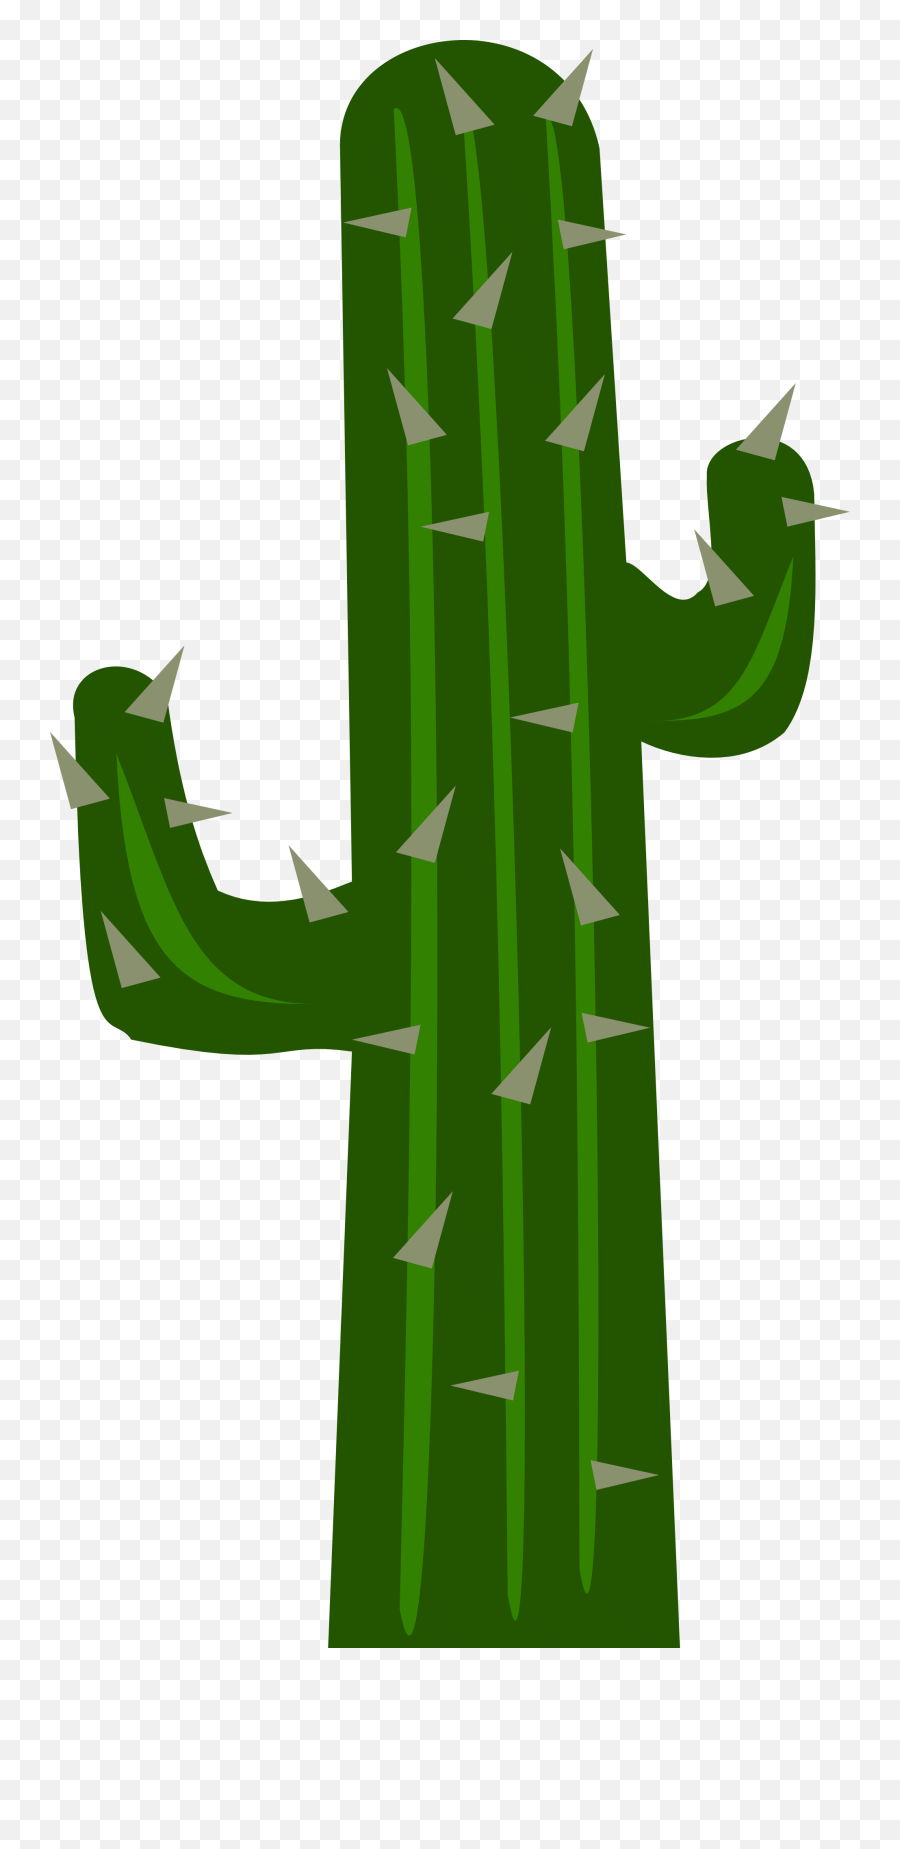 Cactus Clip Art - Transparent Background Cactus Cartoon Png Emoji,Cactus Clipart